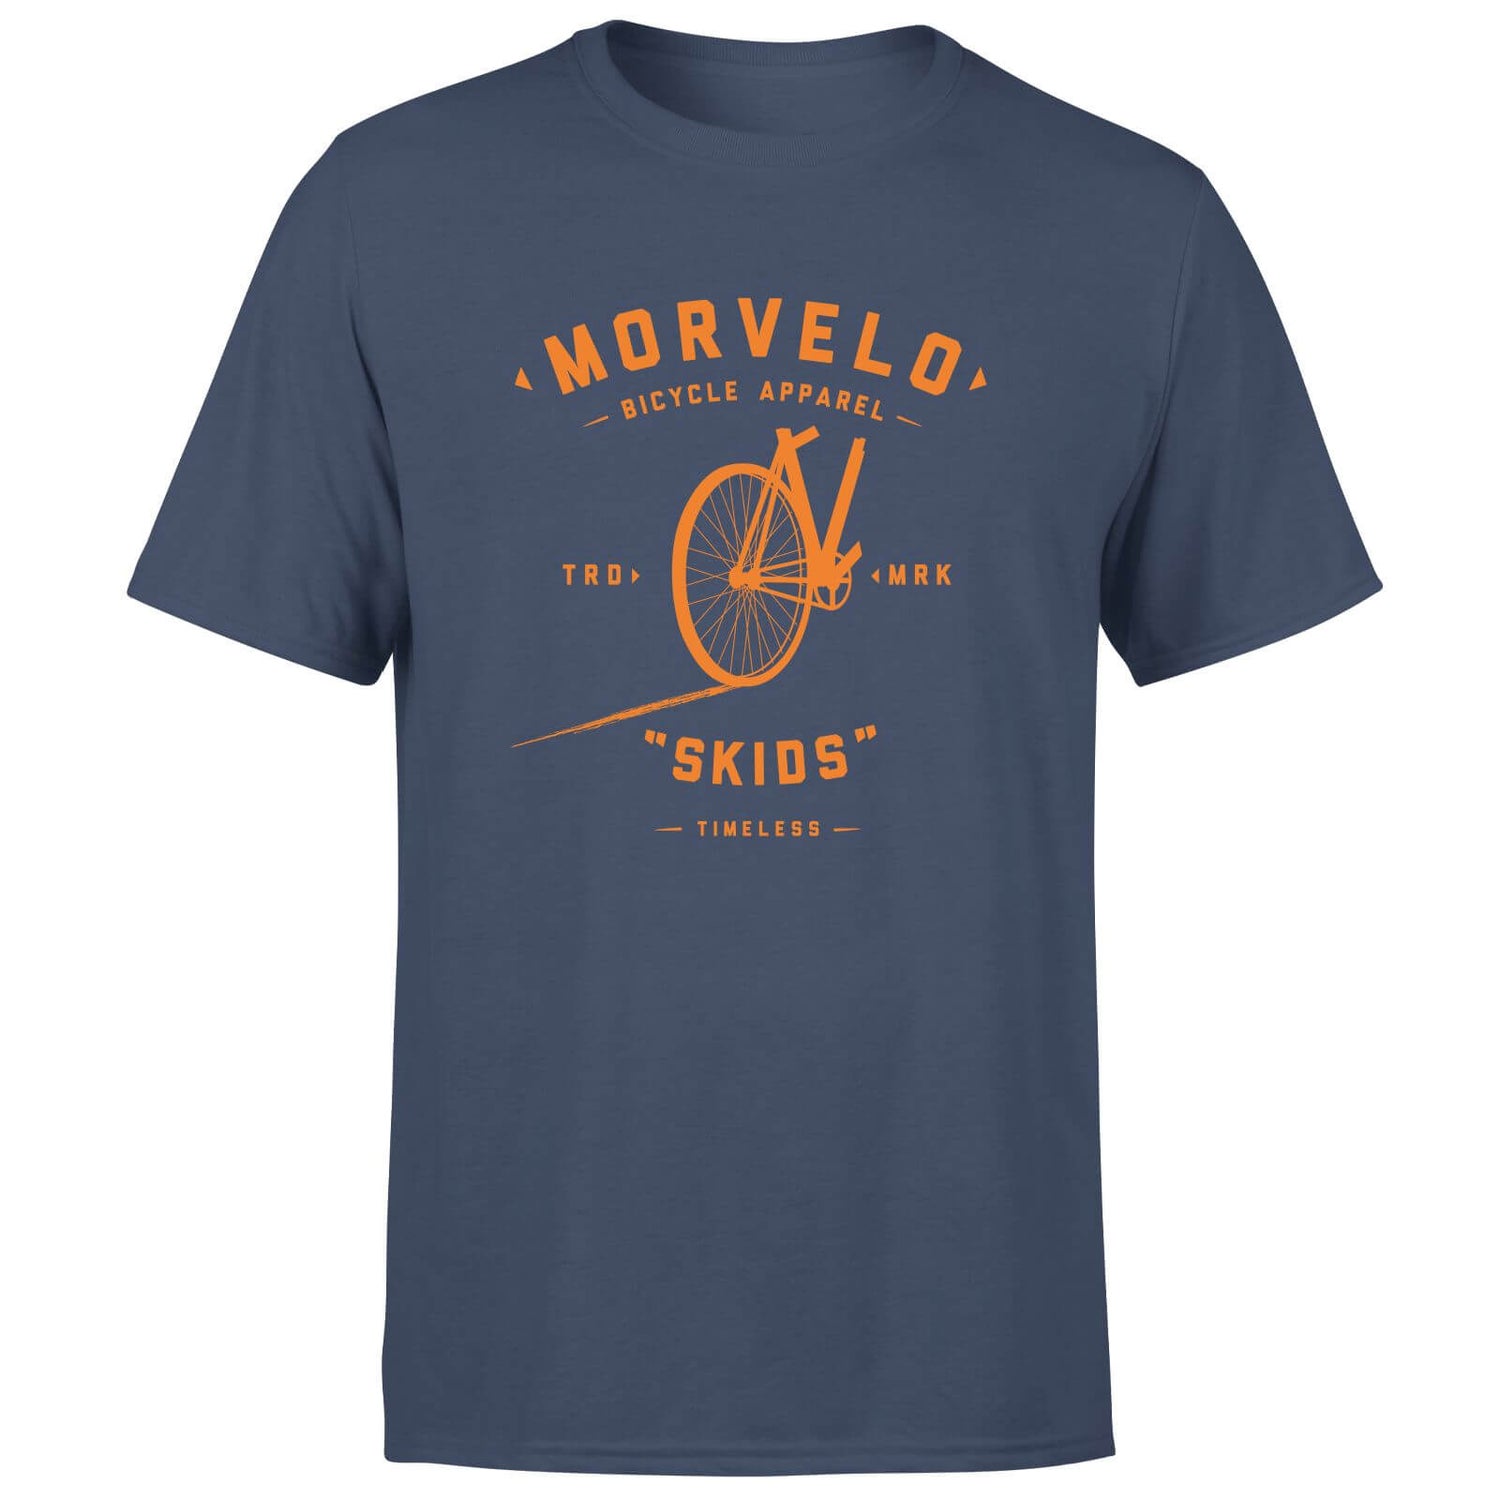 Skids Men's T-Shirt - Navy